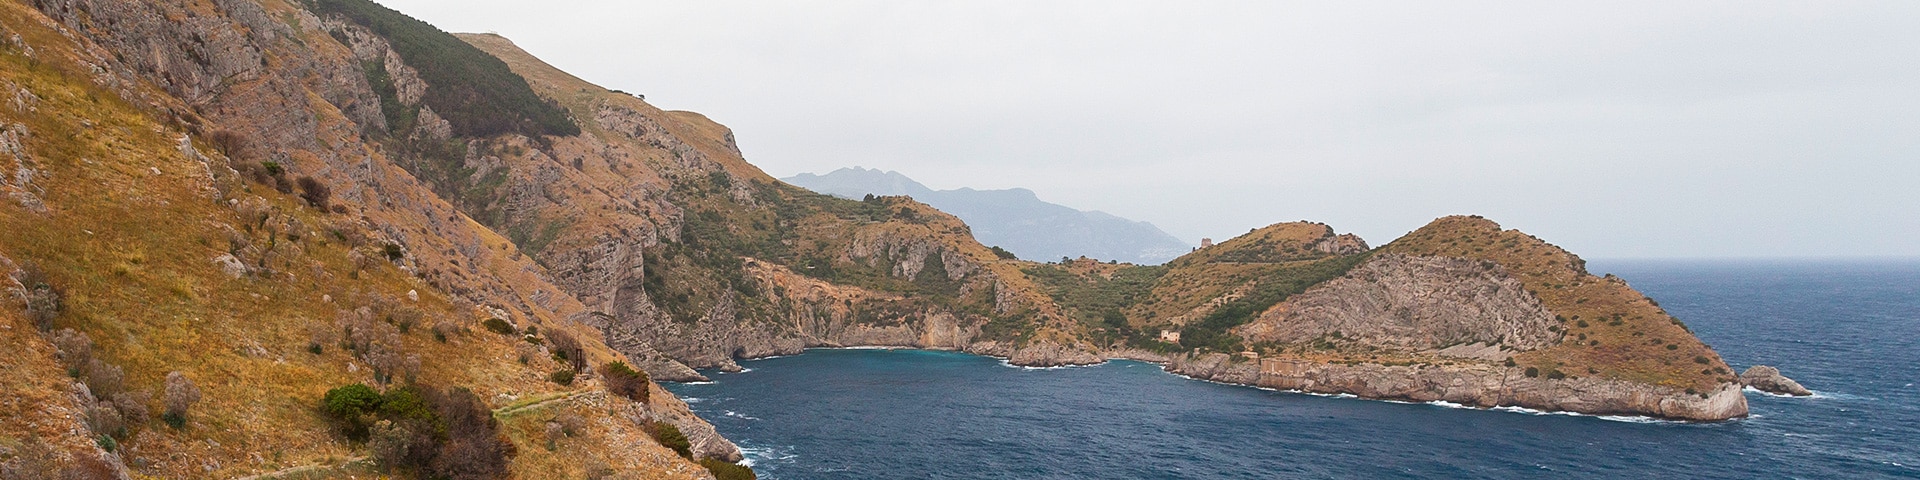 Hiking routes near Amalfi Coast